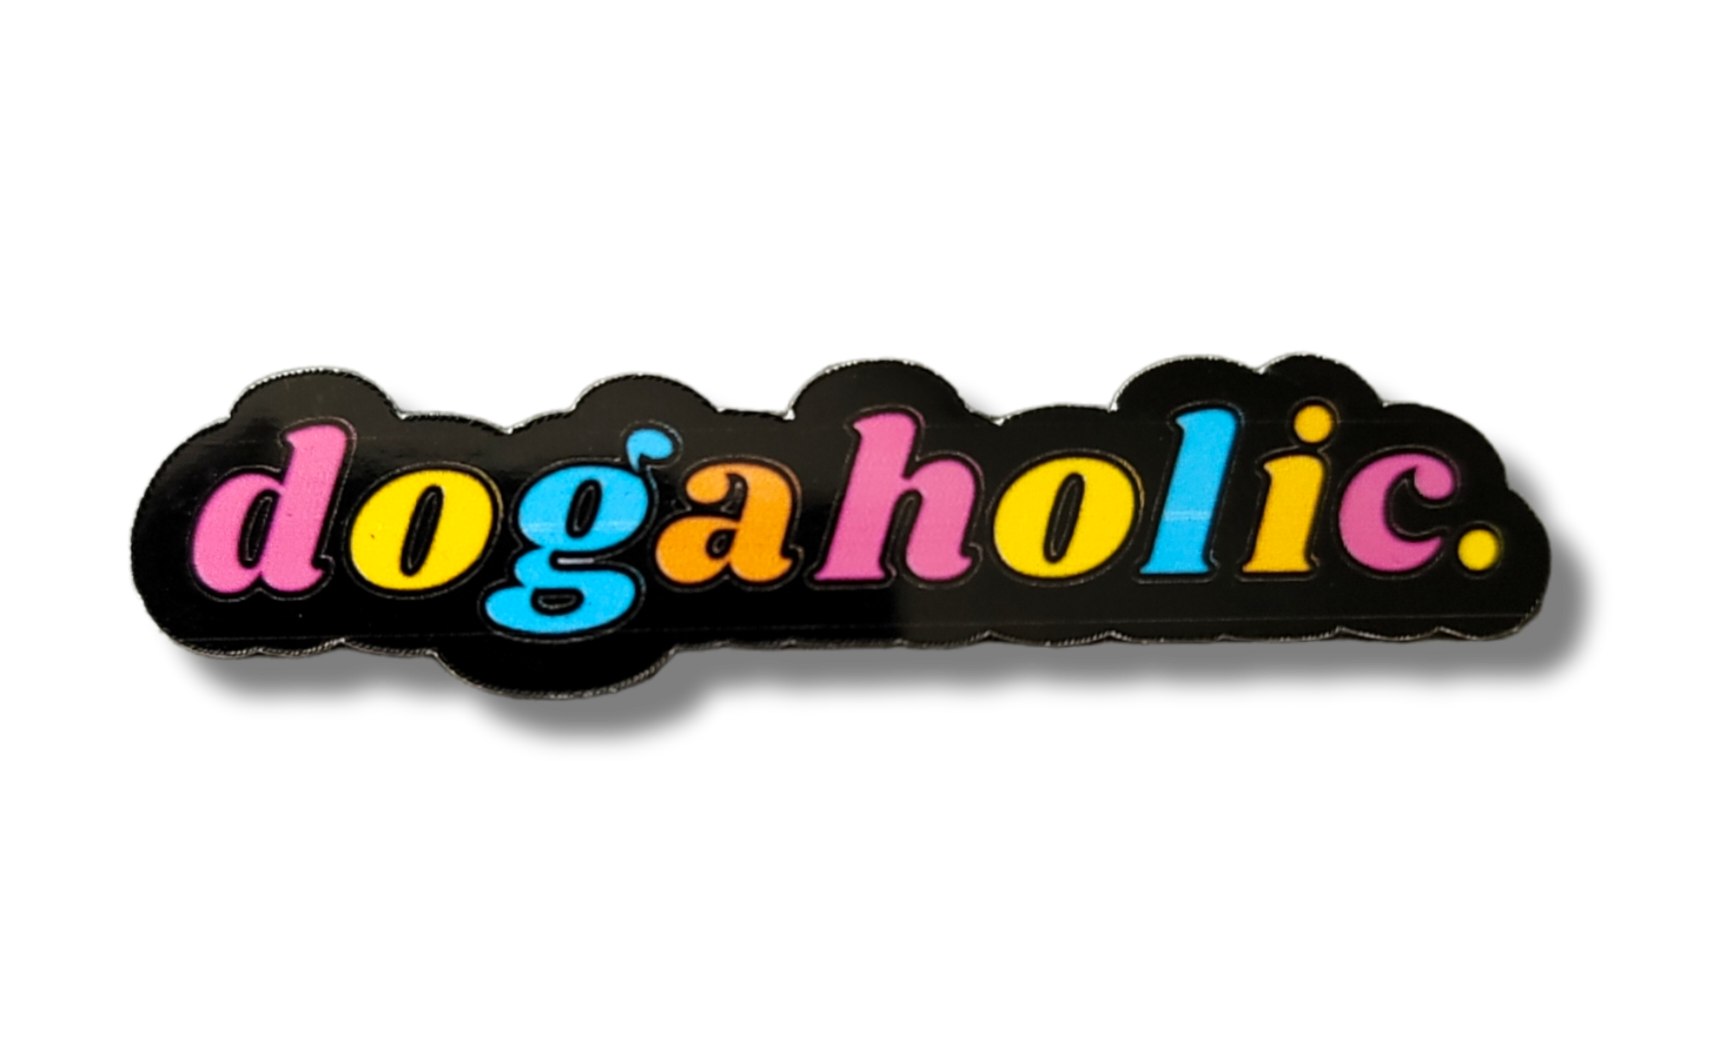 Dogaholic Sticker